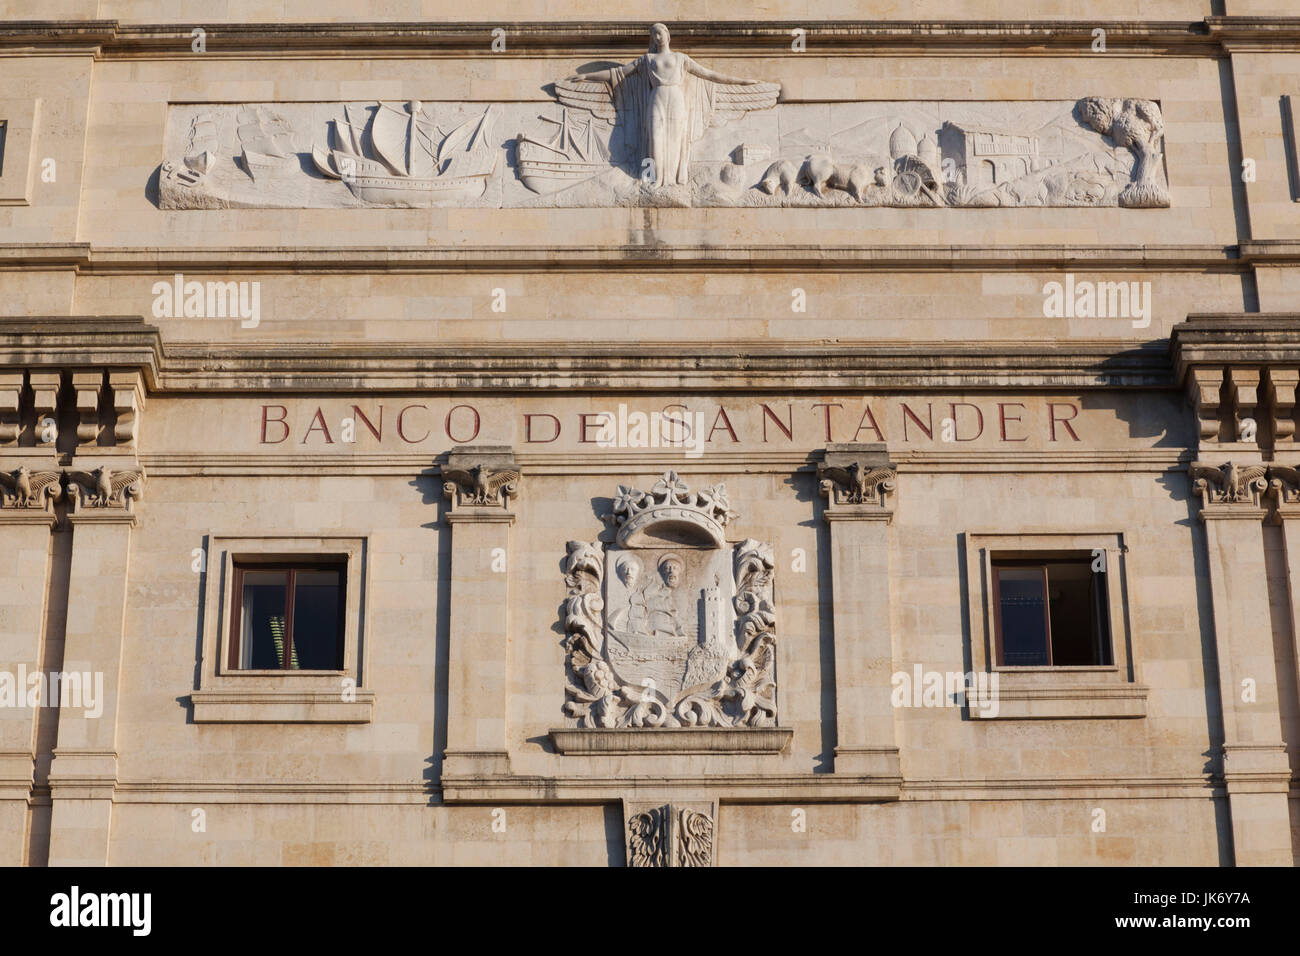 L'Espagne, Cantabria, Cantabria Région Province, Santander, détail de l'original du bâtiment Banco de Santander, première banque de l'Europe Banque D'Images